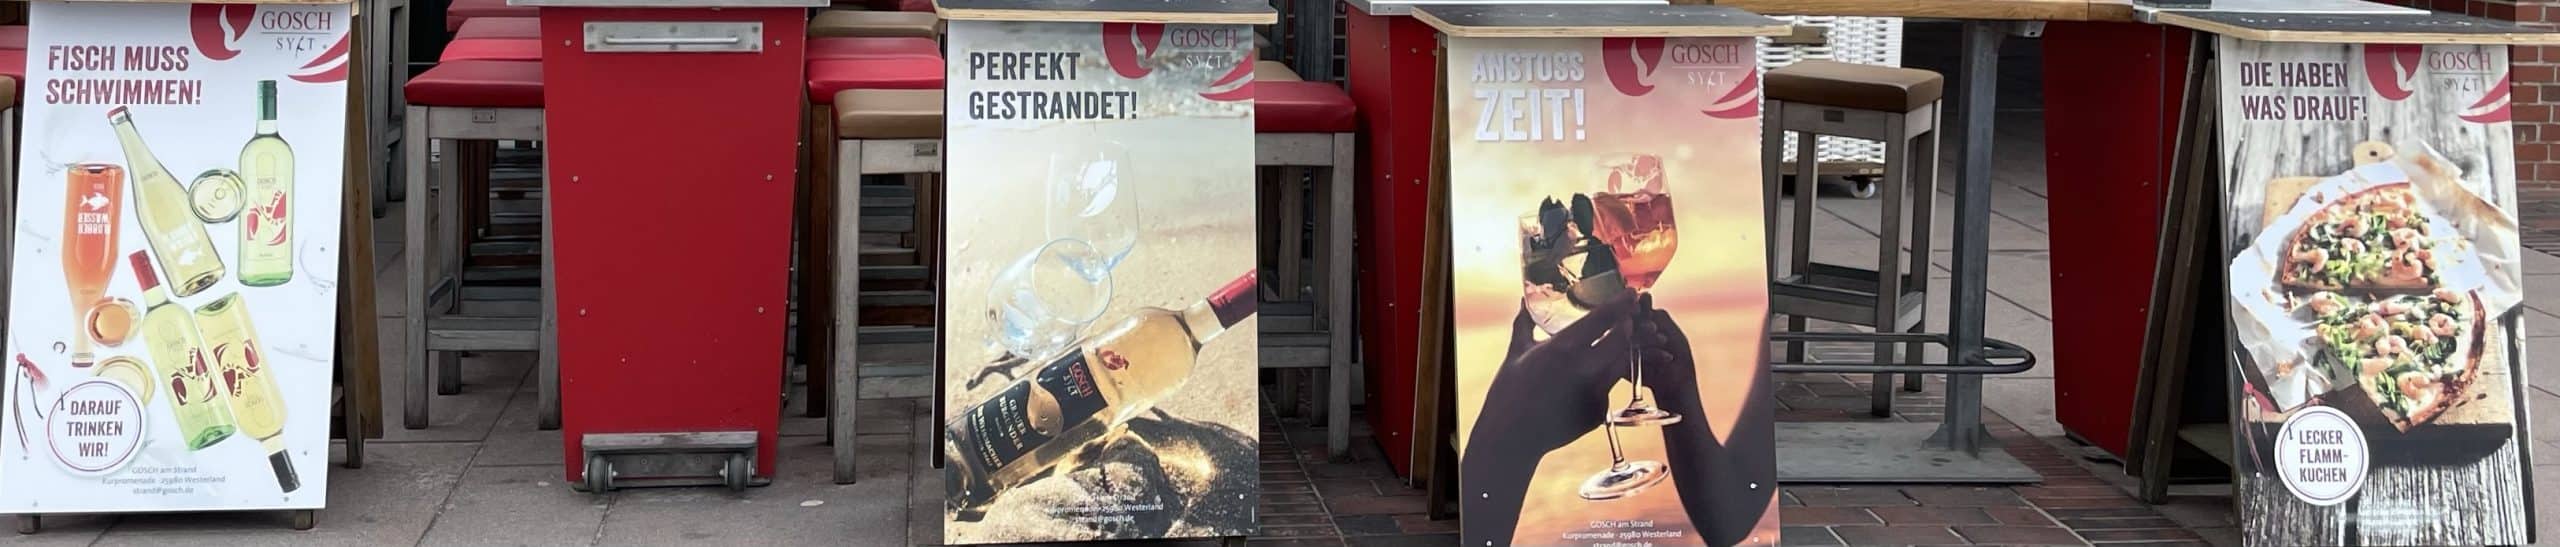 Reklameständer von Gosch an der Westerläänder Promenade aufgereiht, da Gosch geschlossen